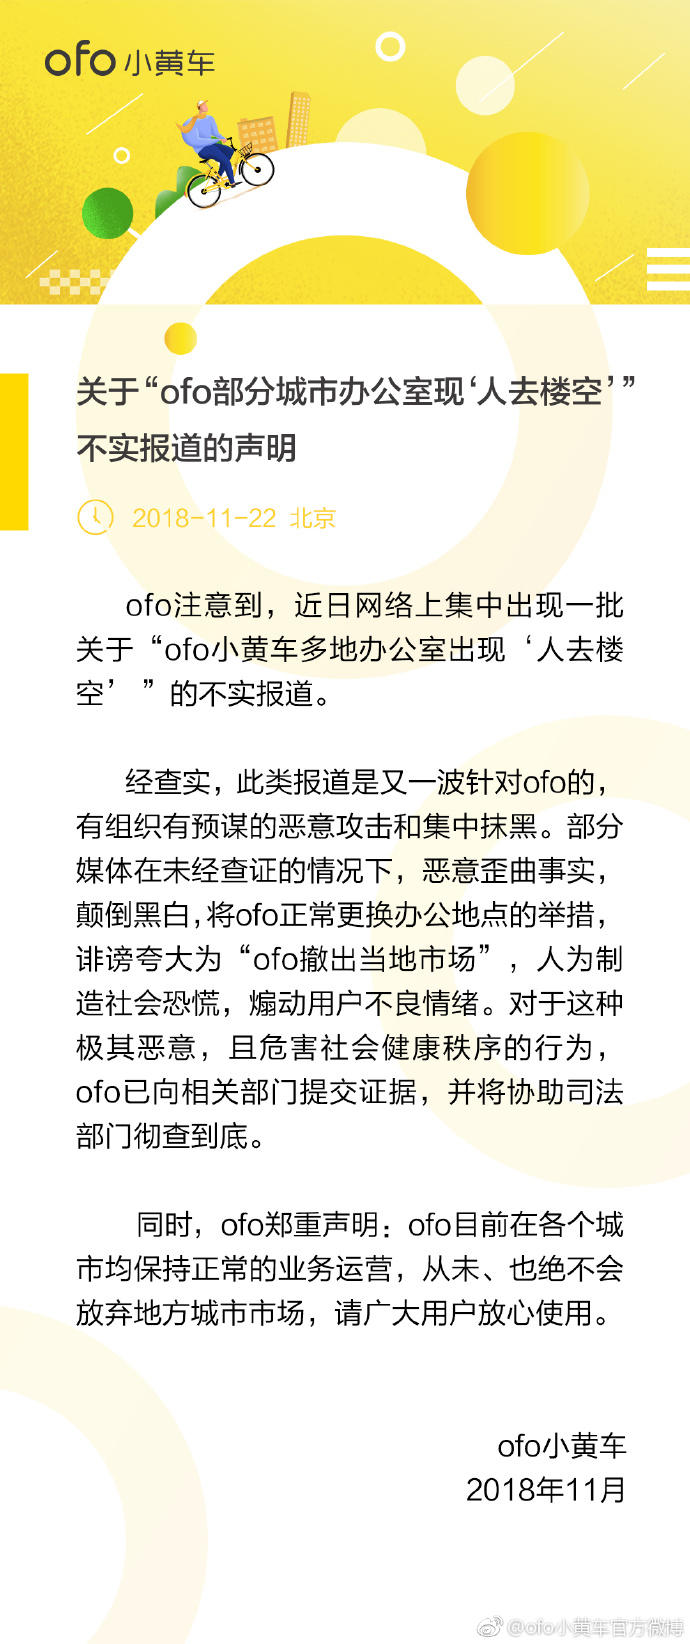 ofo小黄车官方微博今天发布声明称：从未、也绝不会放弃地方城市市场